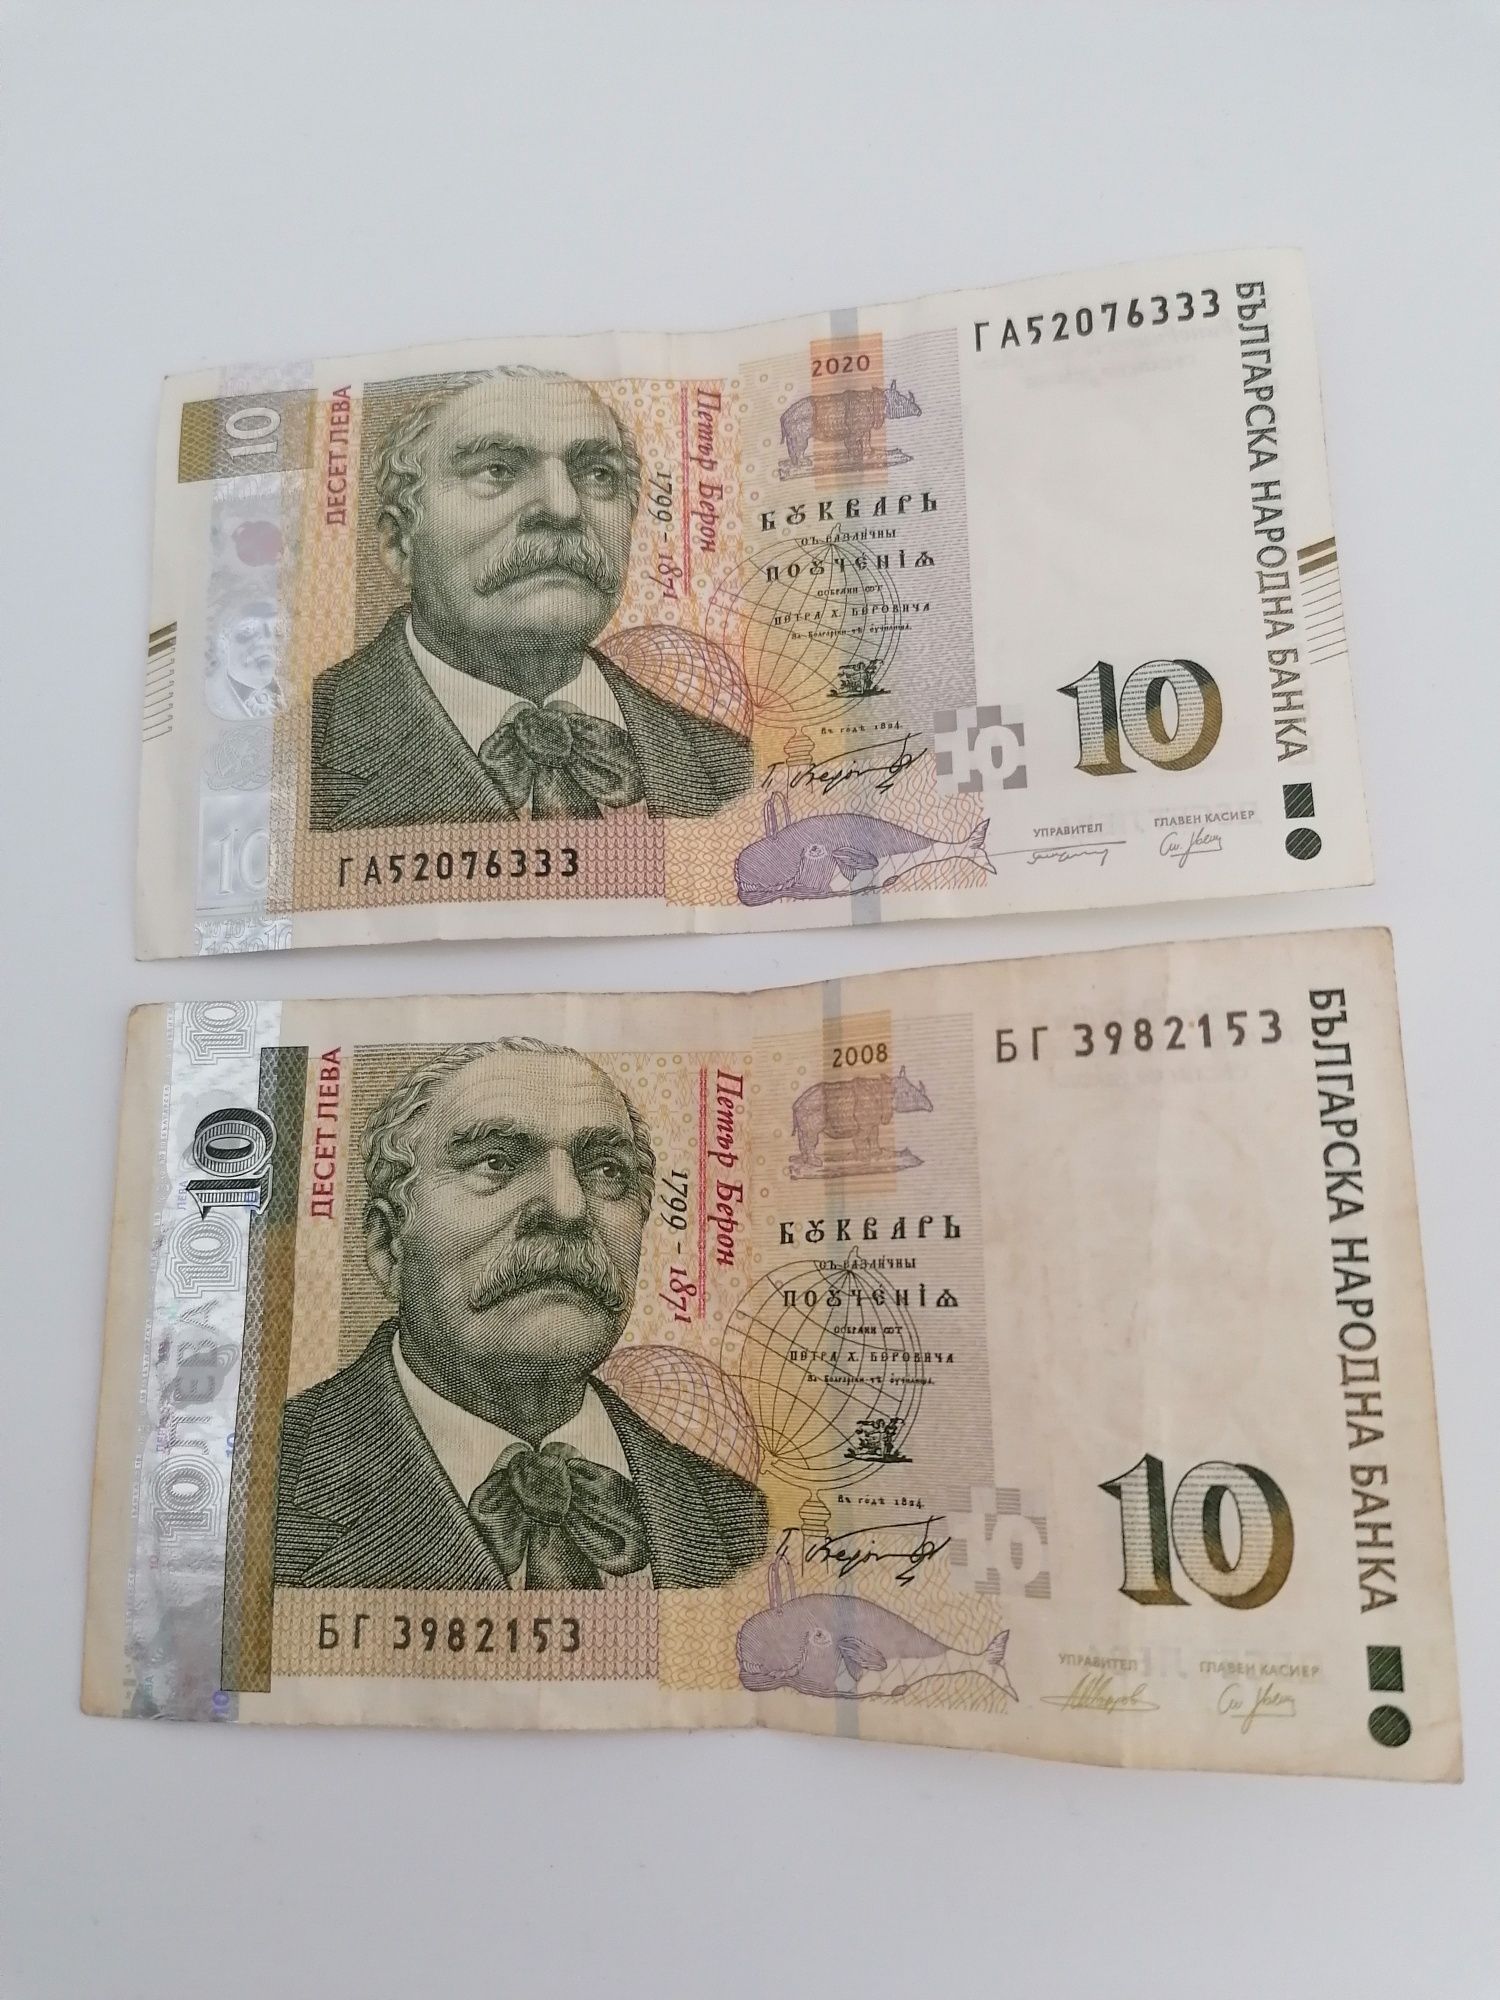 Doua Bancnote de câte 10 Leva bulgărească din anii 2008 și 2020